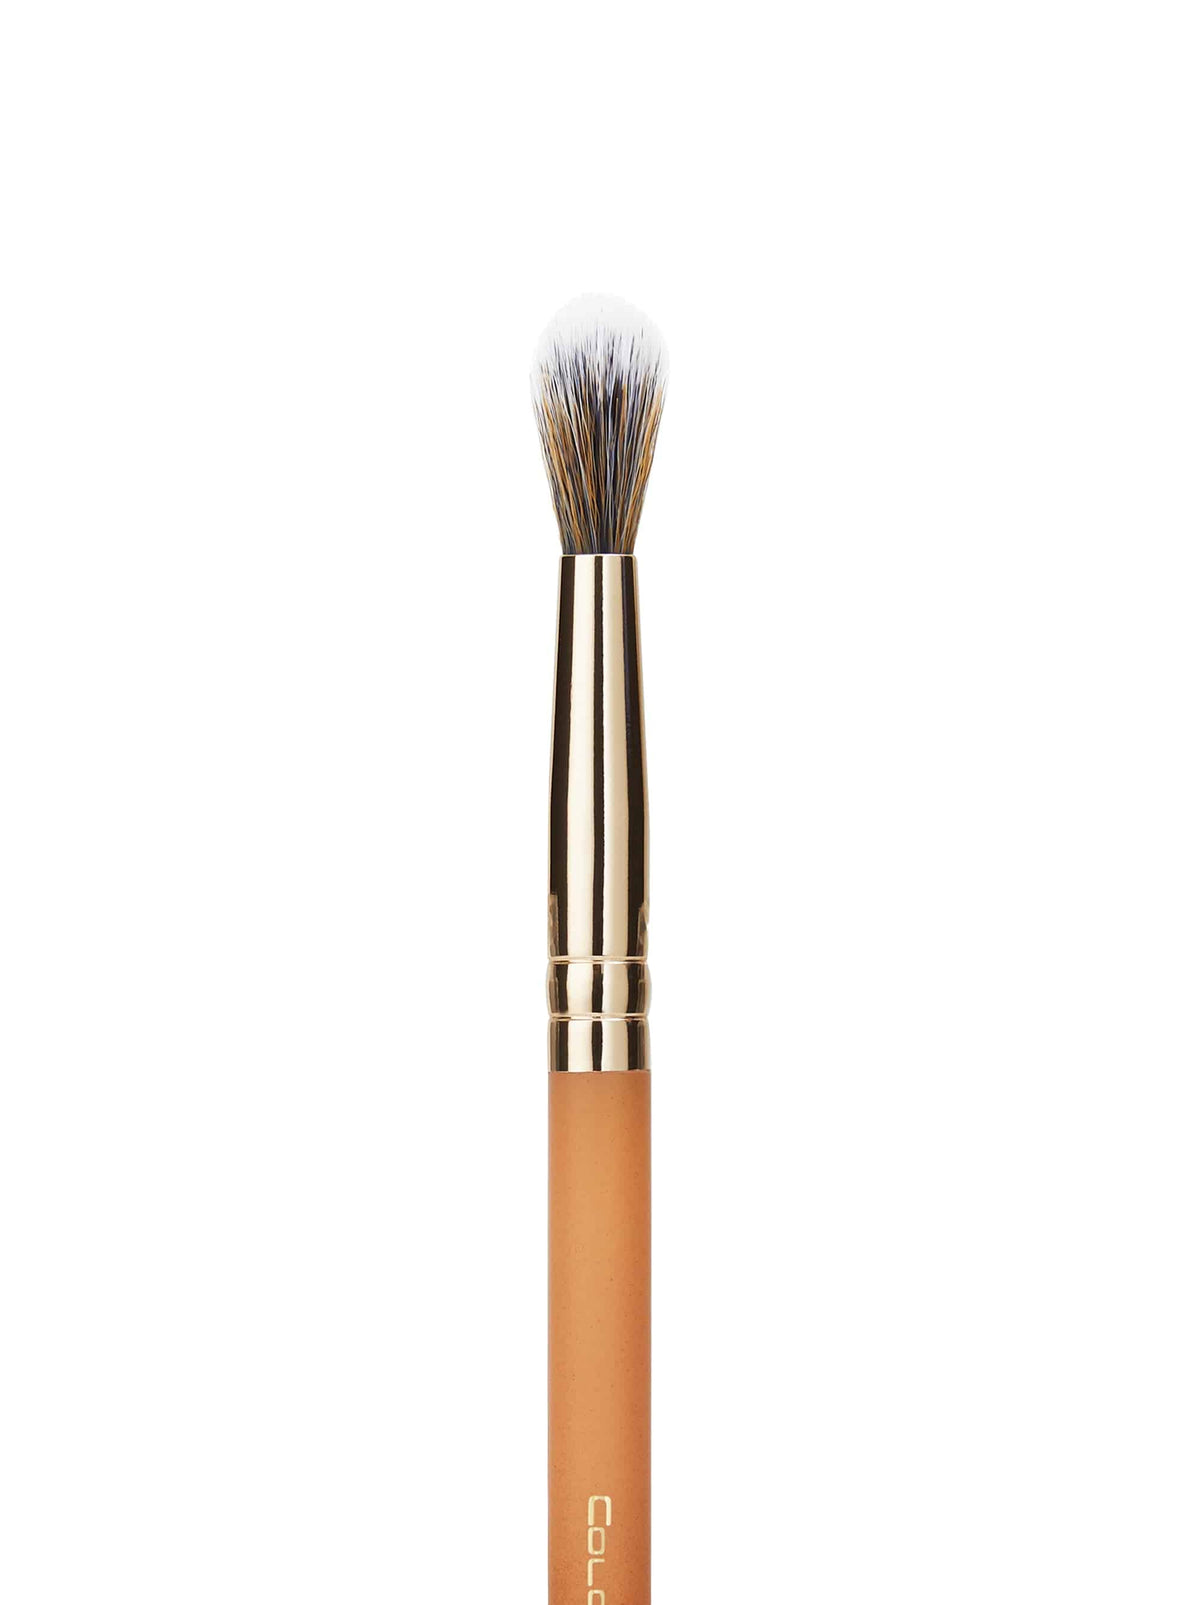 Signature Medium Tapered Blending Brush - Coloured Raine Cosmetics